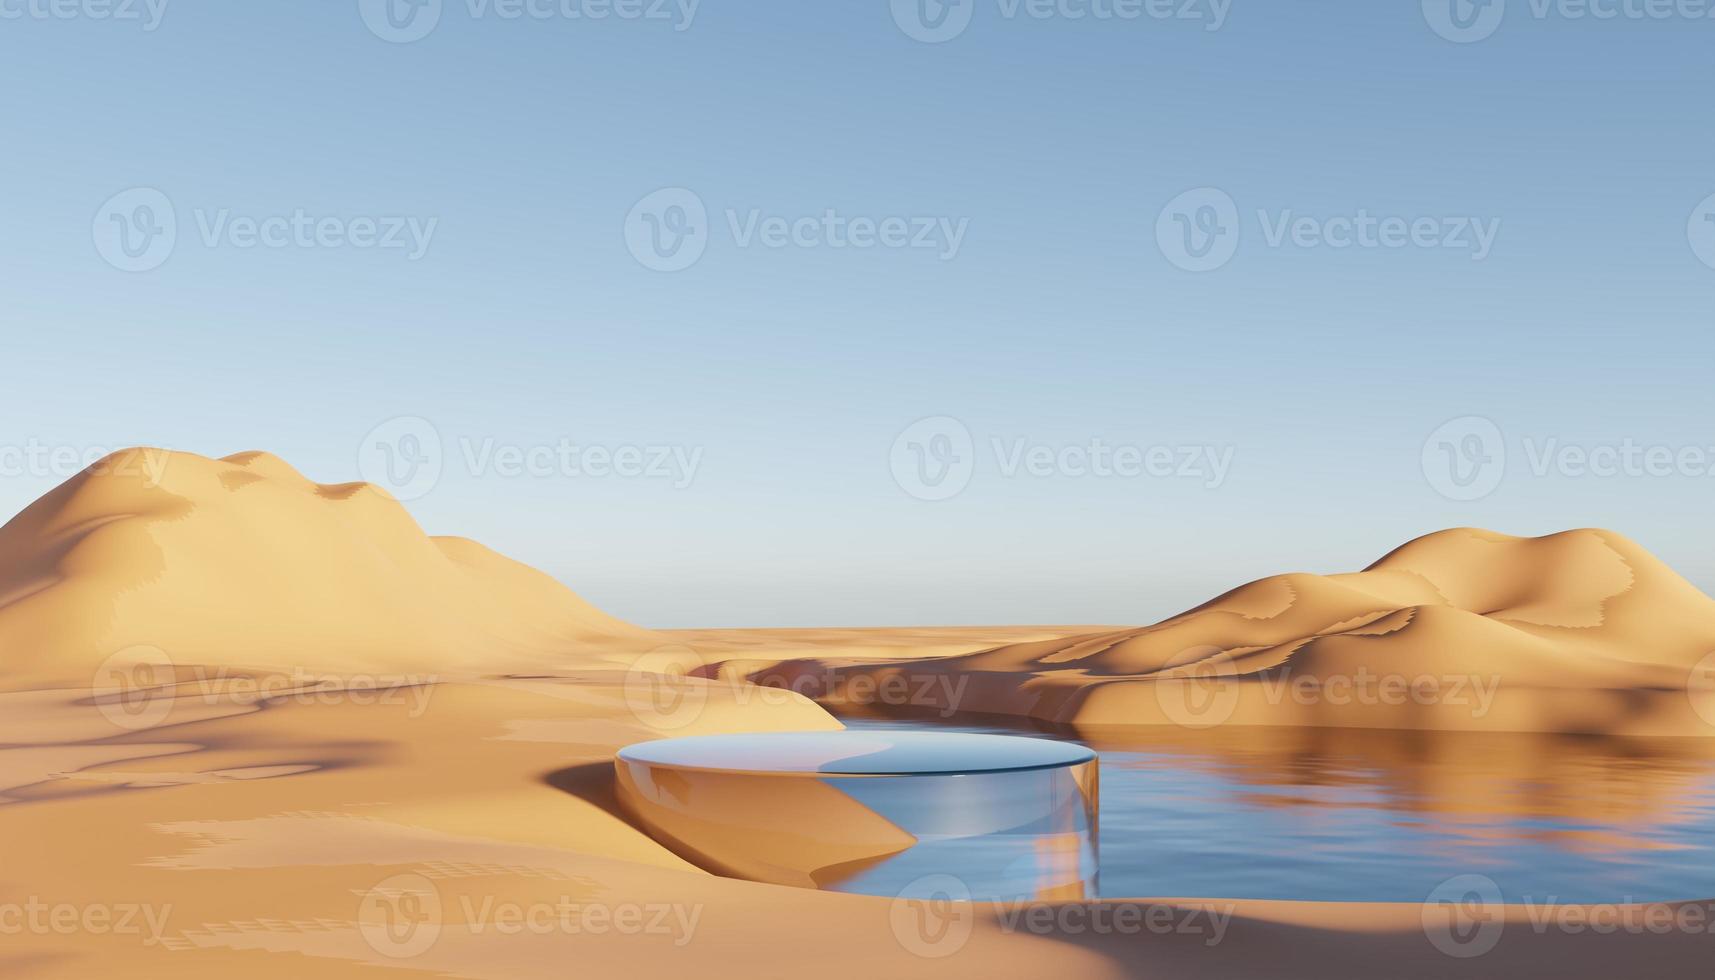 sable de falaise de dune abstraite avec plate-forme de podium métallique. fond de paysage naturel désertique surréaliste. scène de désert avec un design géométrique d'arches métalliques brillantes. rendu 3D. photo